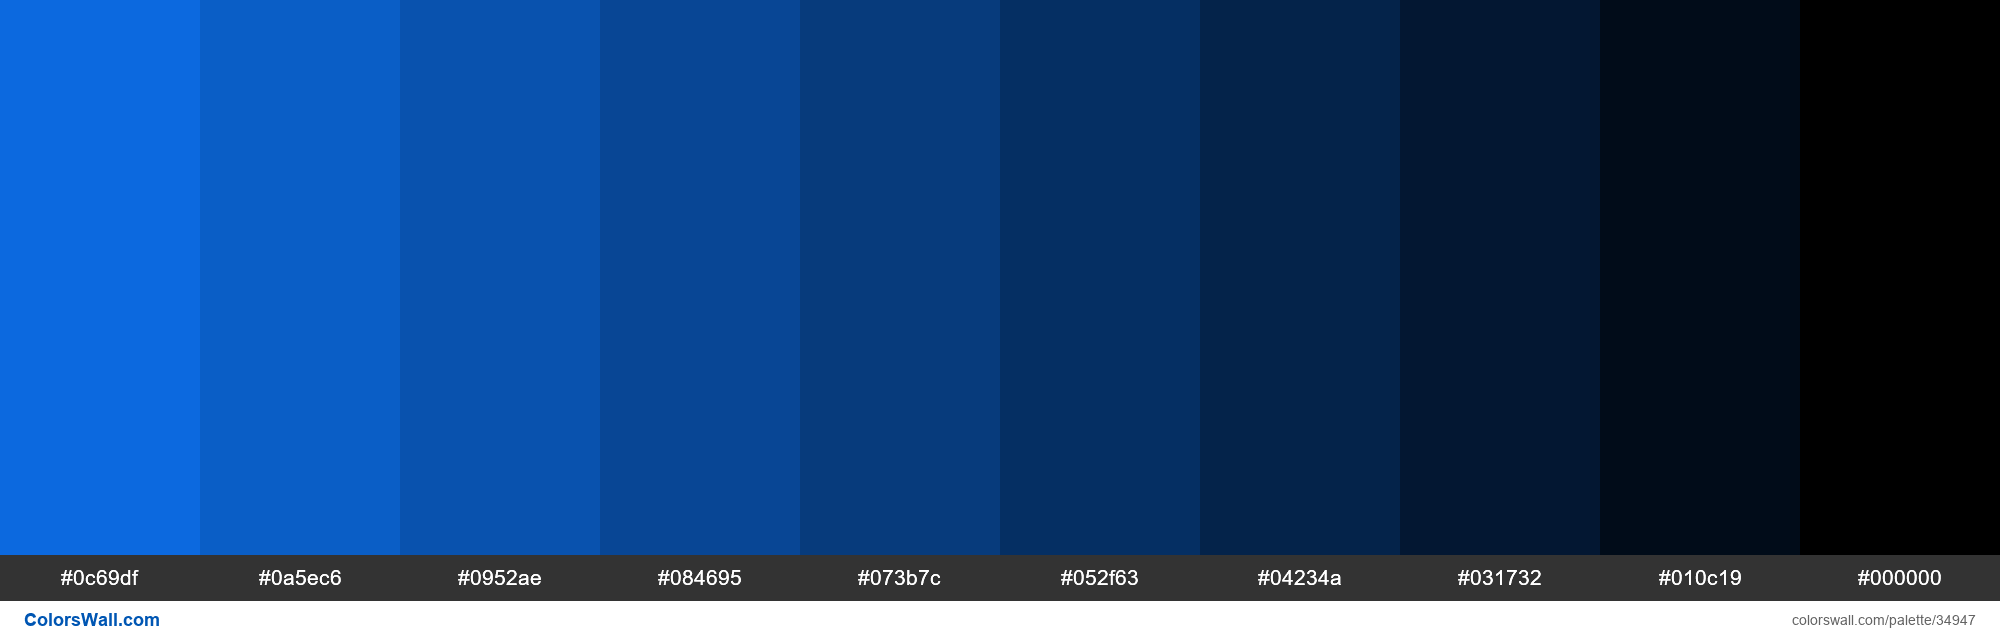 Shades Xkcd Color Deep Sky Blue 0d75f8 Hex 34947 Colorswall 